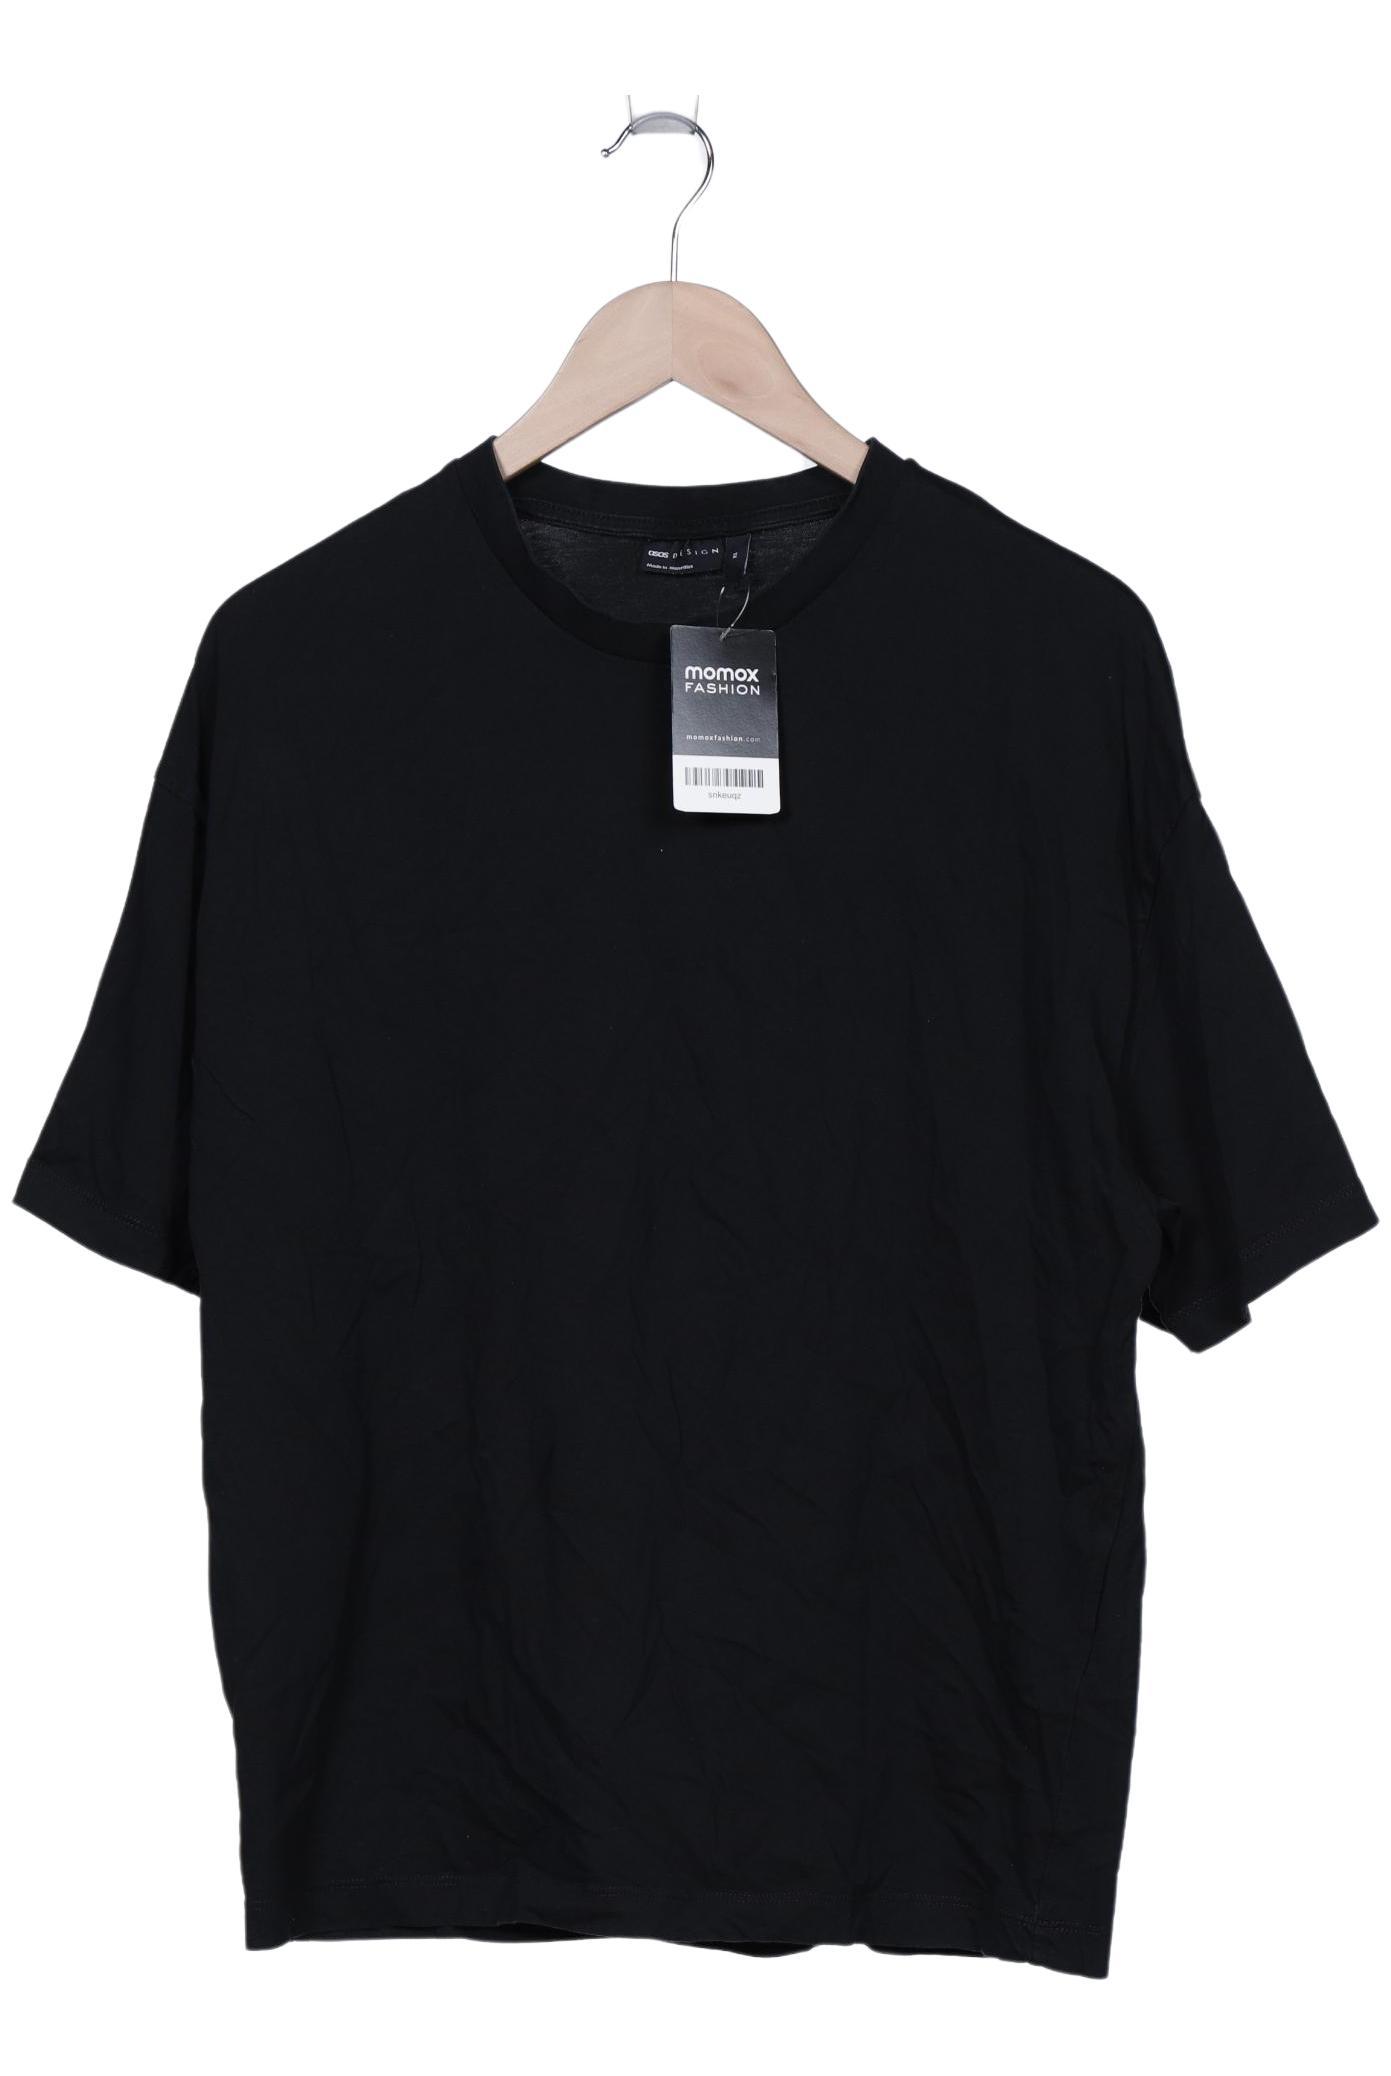 asos Herren T-Shirt, schwarz, Gr. 44 von asos